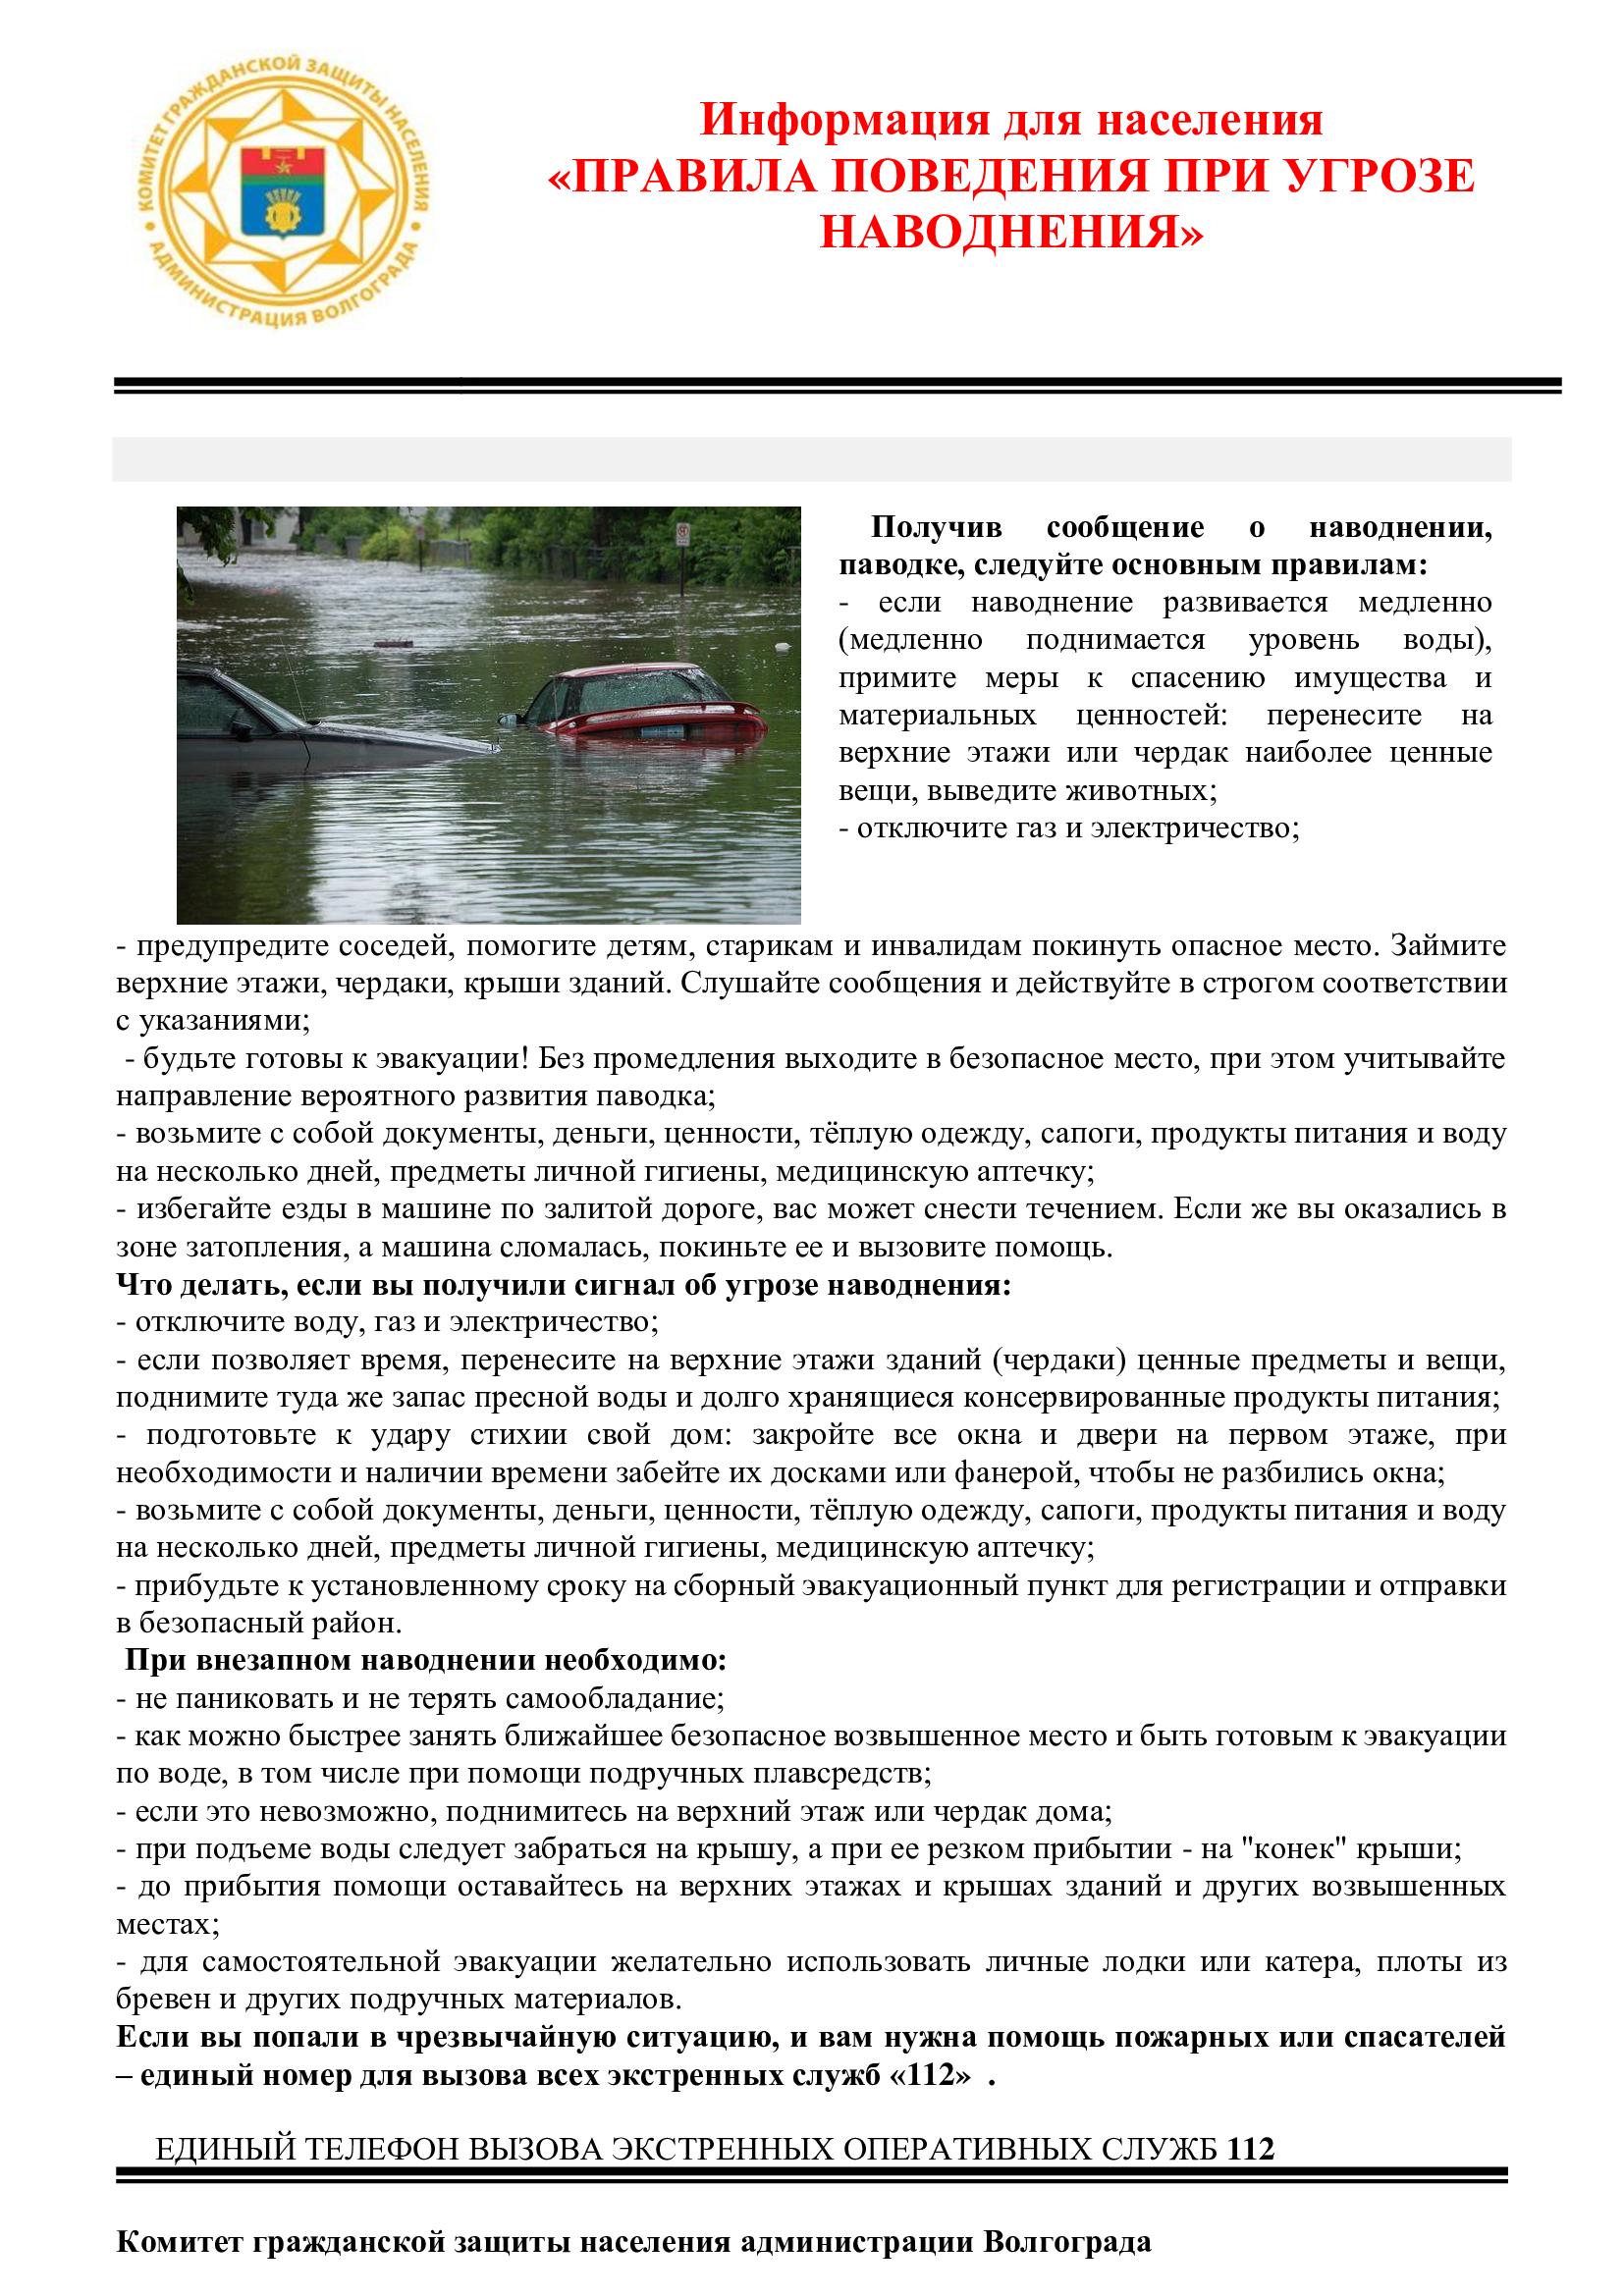 Правила поведения при угрозе наводнения